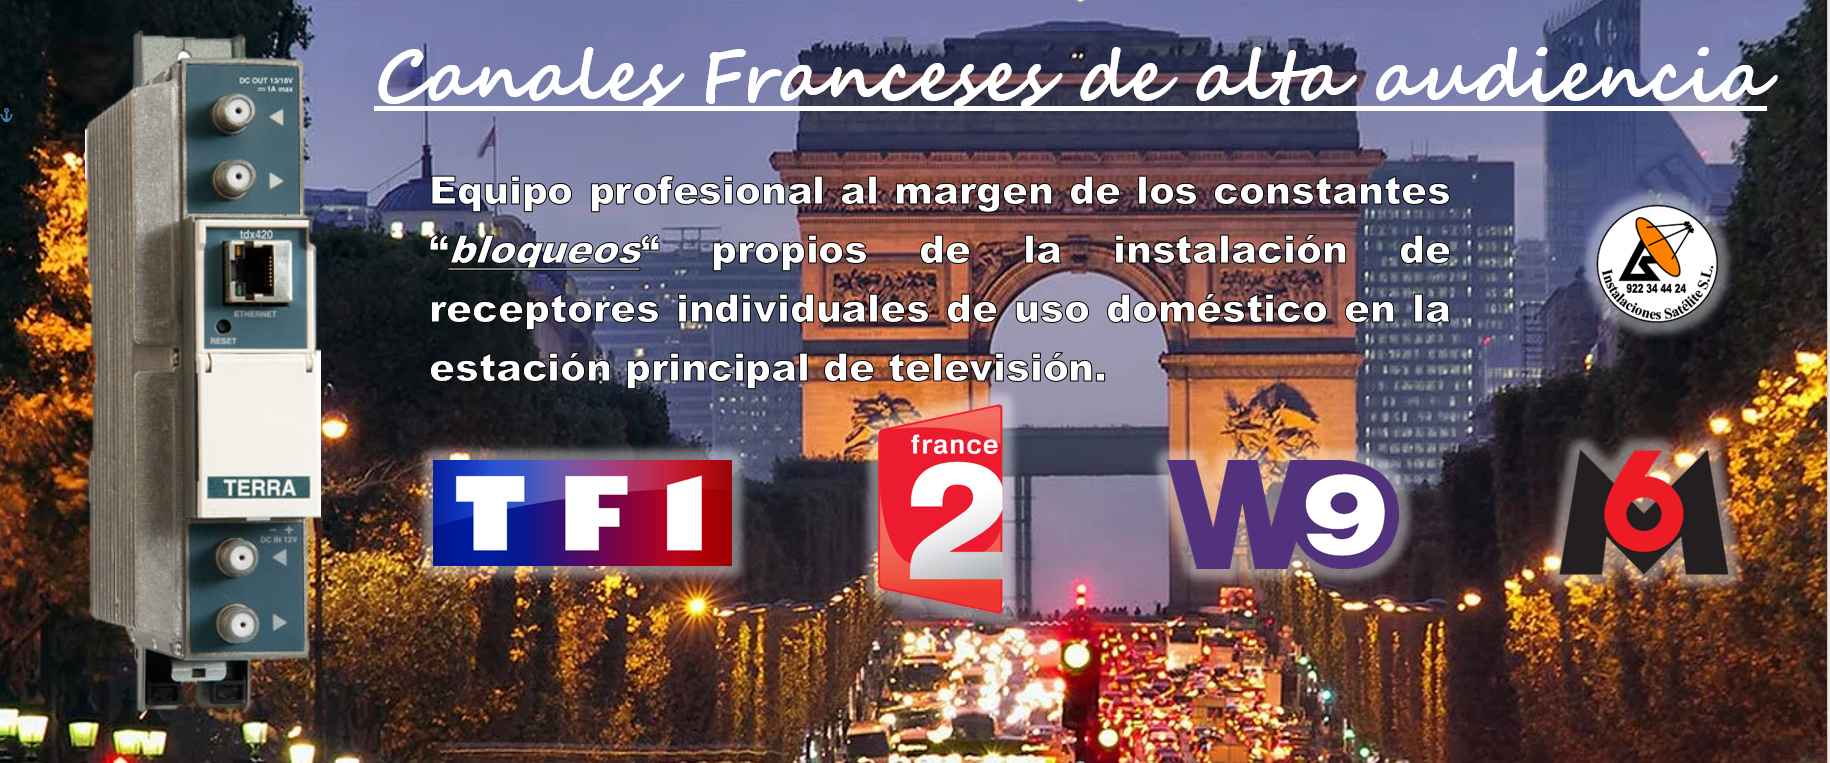 Televisión francesa